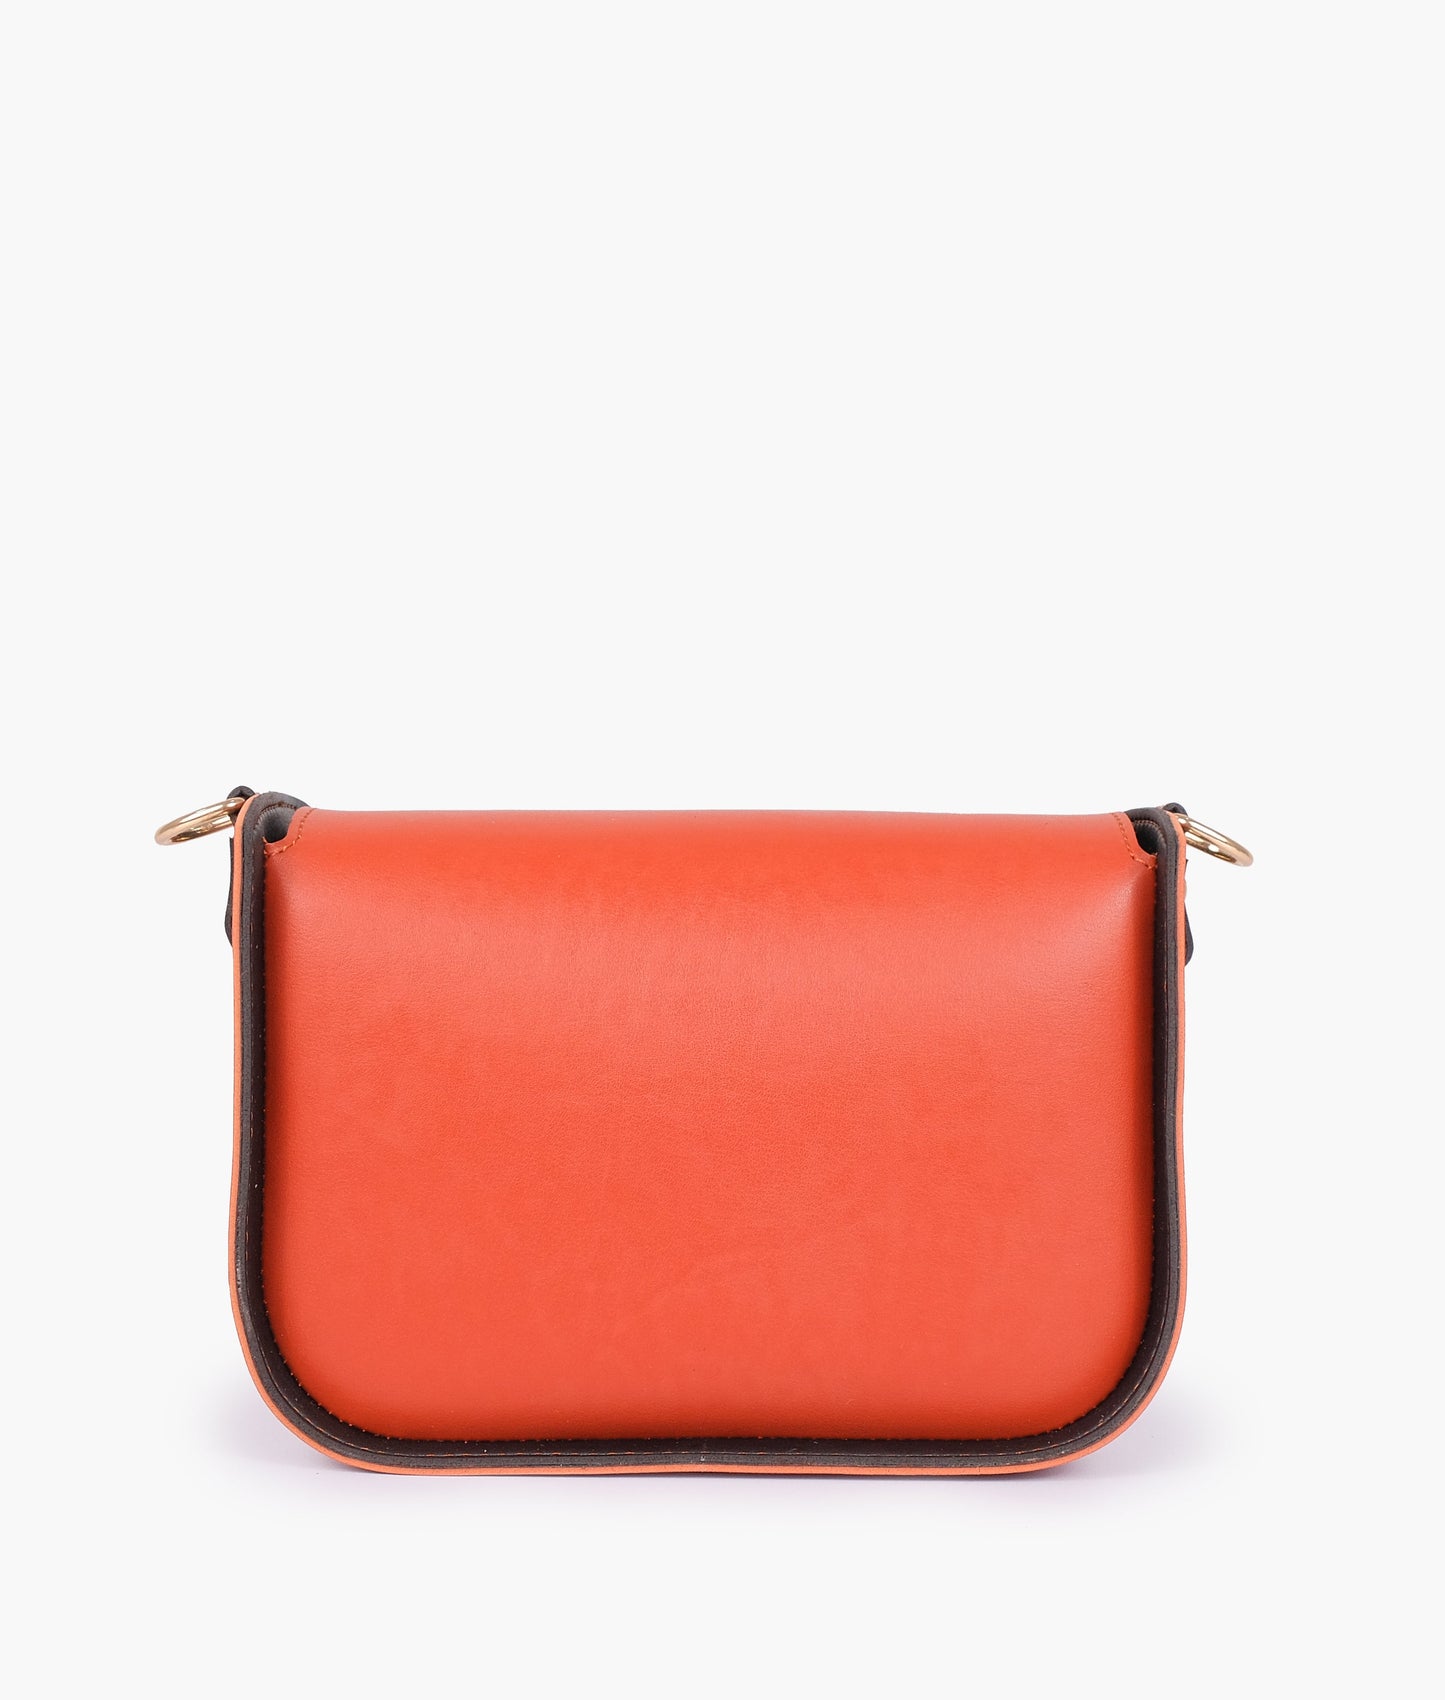 Red Handbag For Women 606